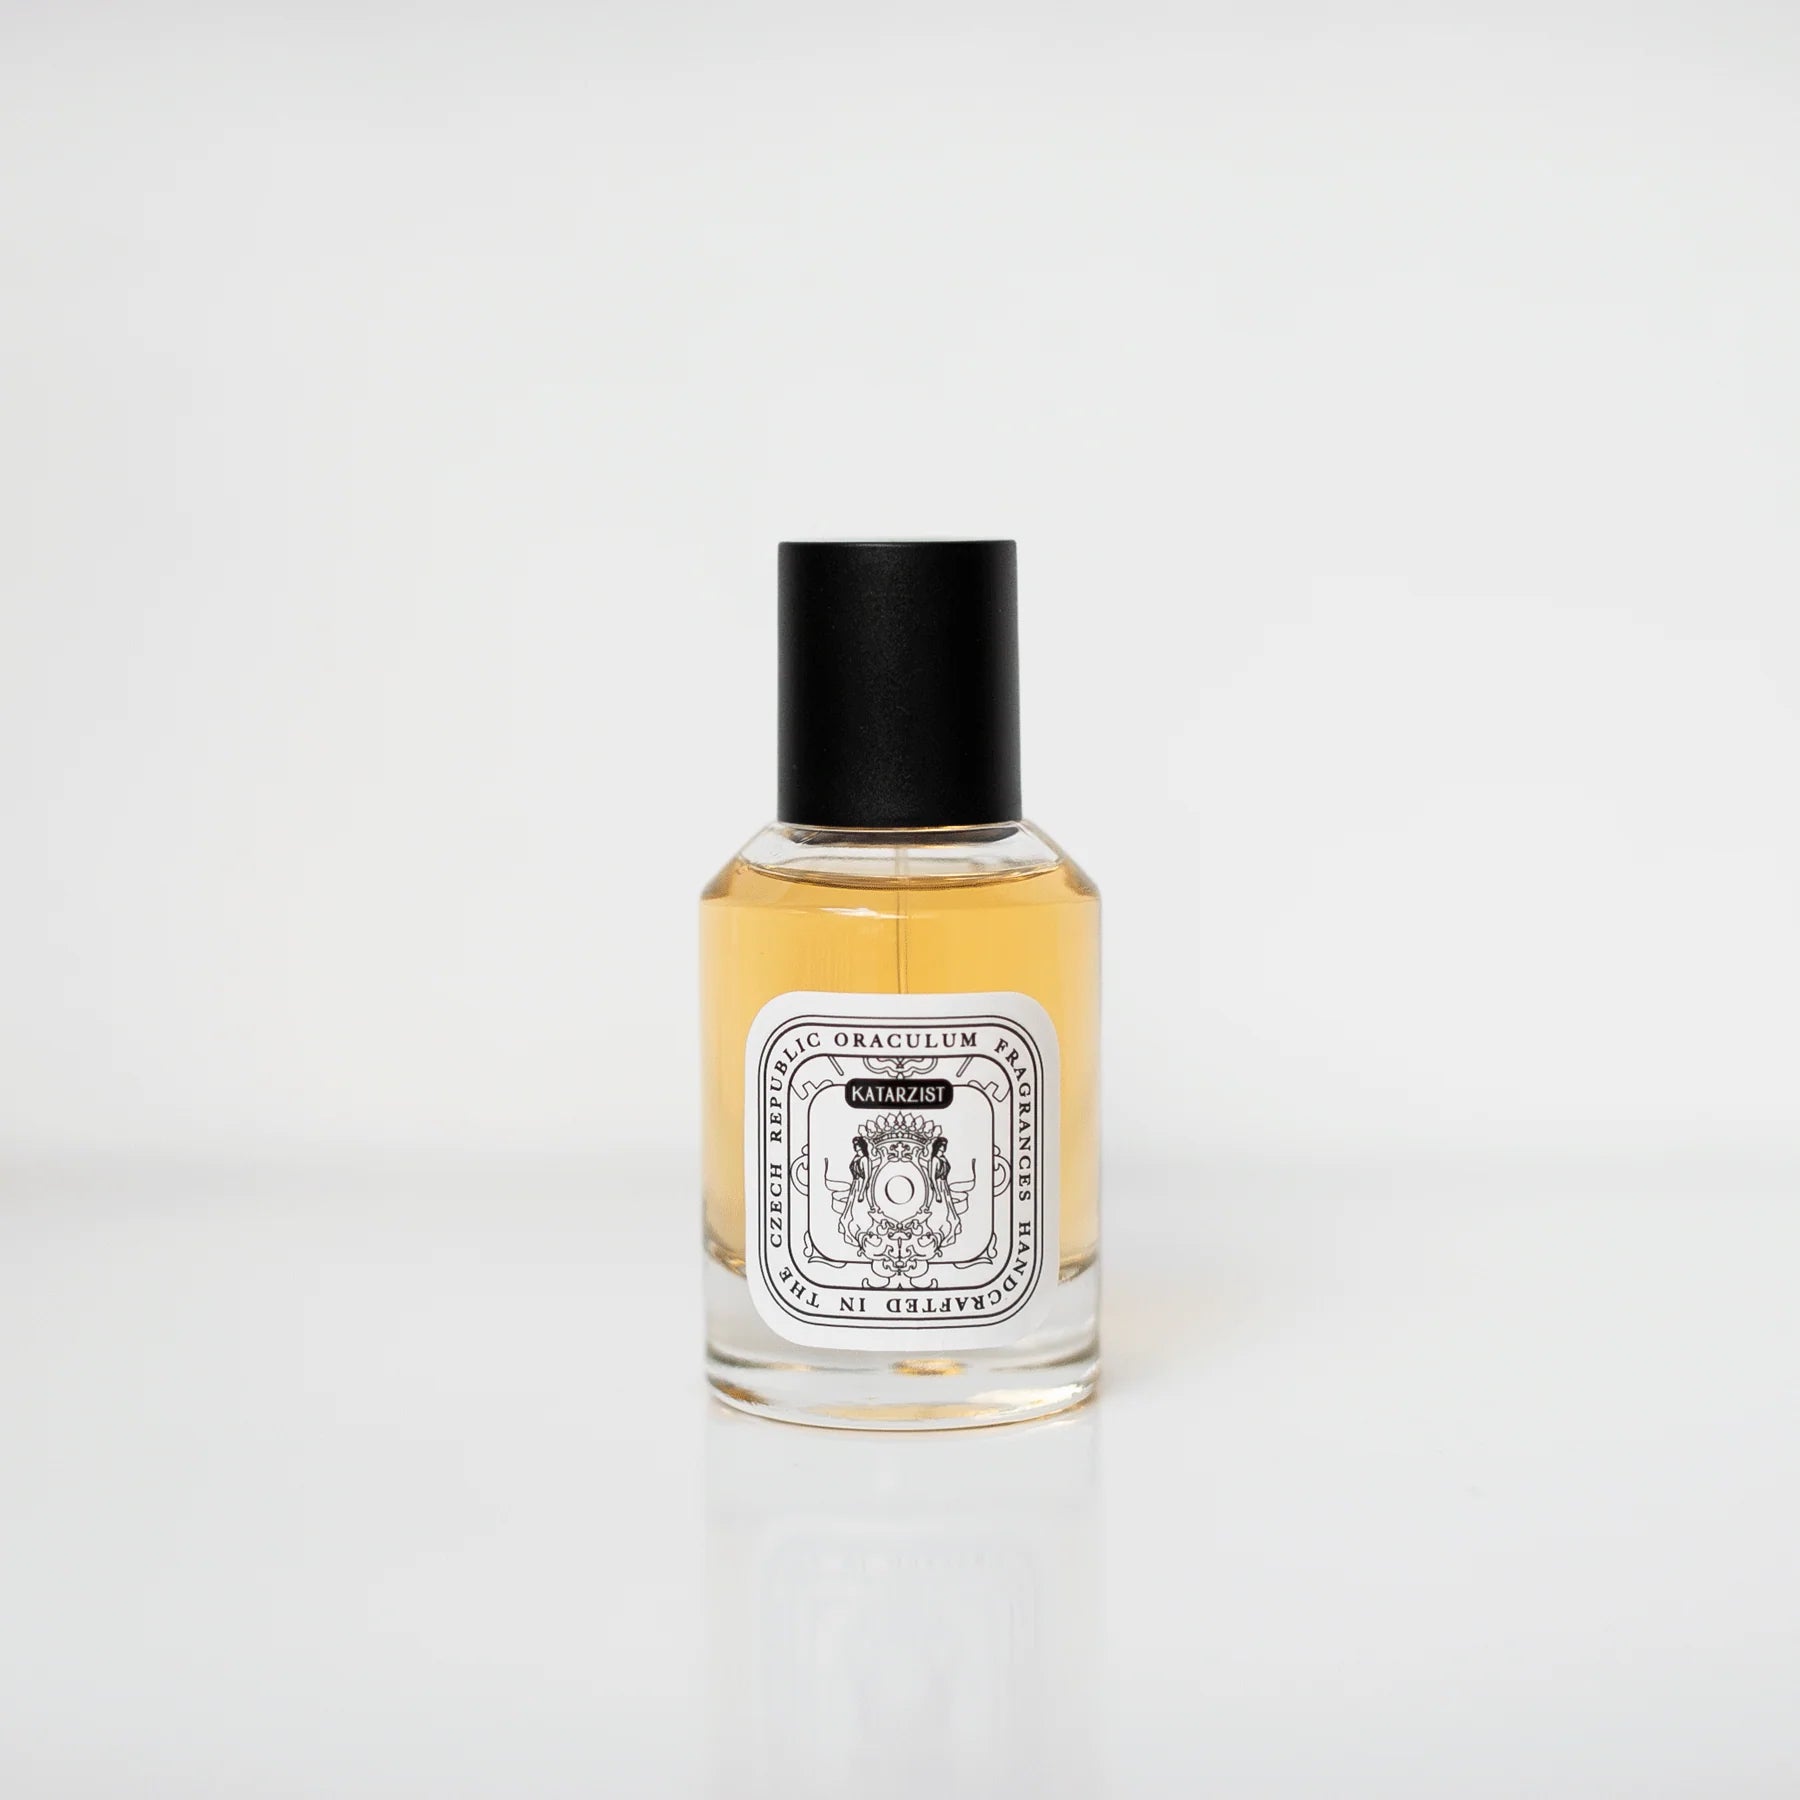 Oraculum - Katarzist Eau de Parfum 50 ml